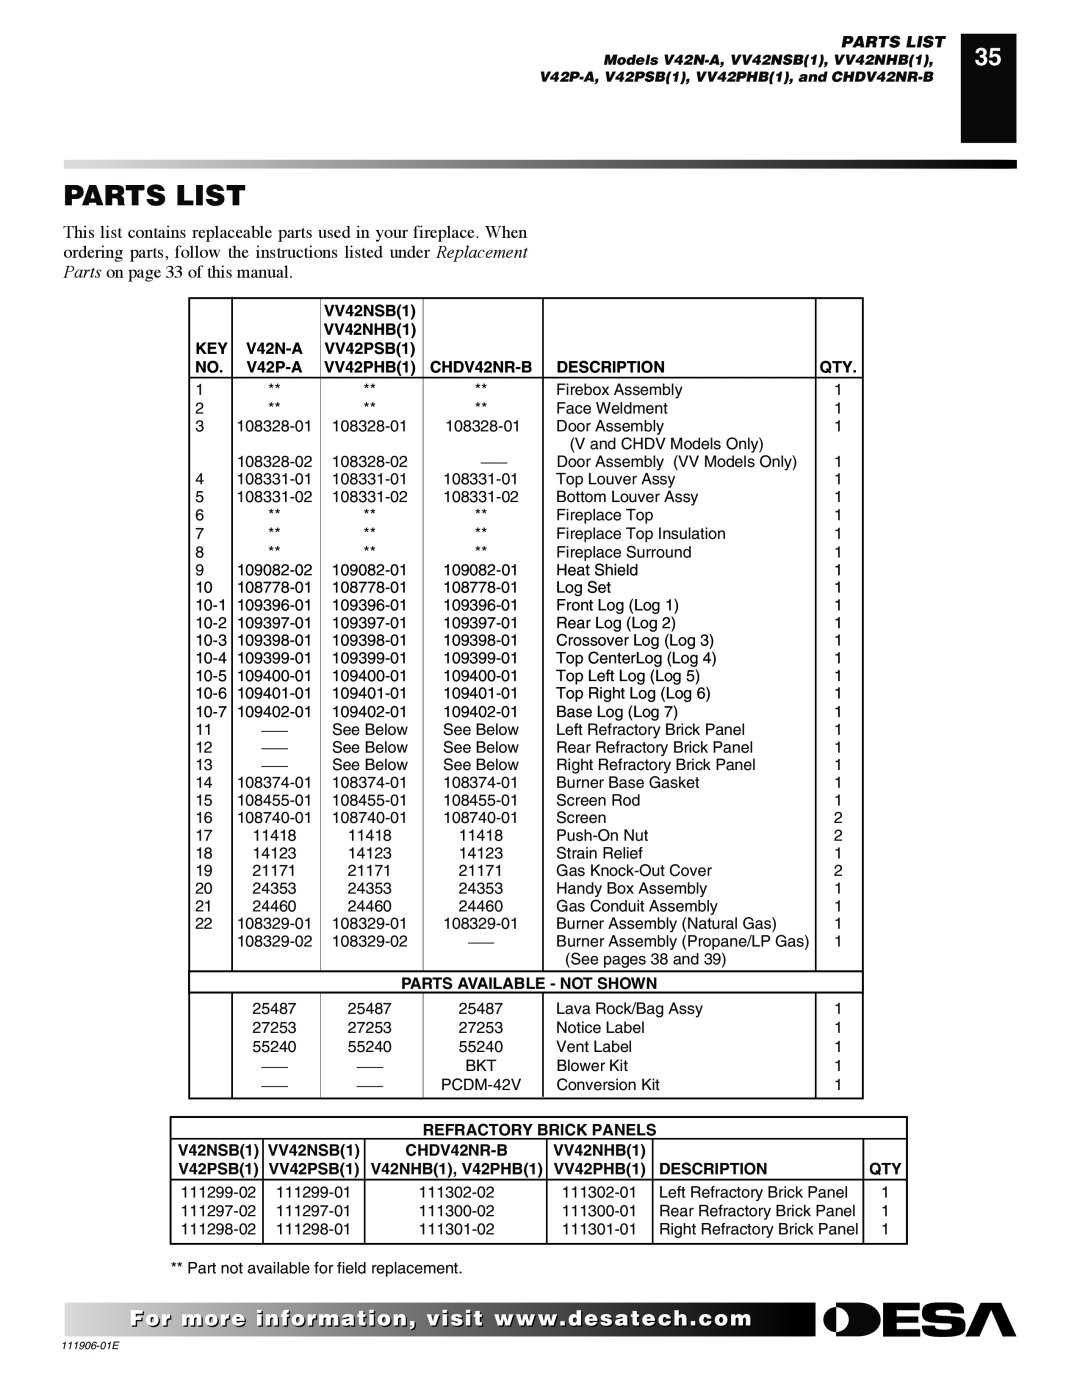 Desa CHDV42NR-B Parts List, VV42NSB1, VV42NHB1, V42N-A, VV42PSB1, V42P-A, VV42PHB1, Description, Refractory Brick Panels 